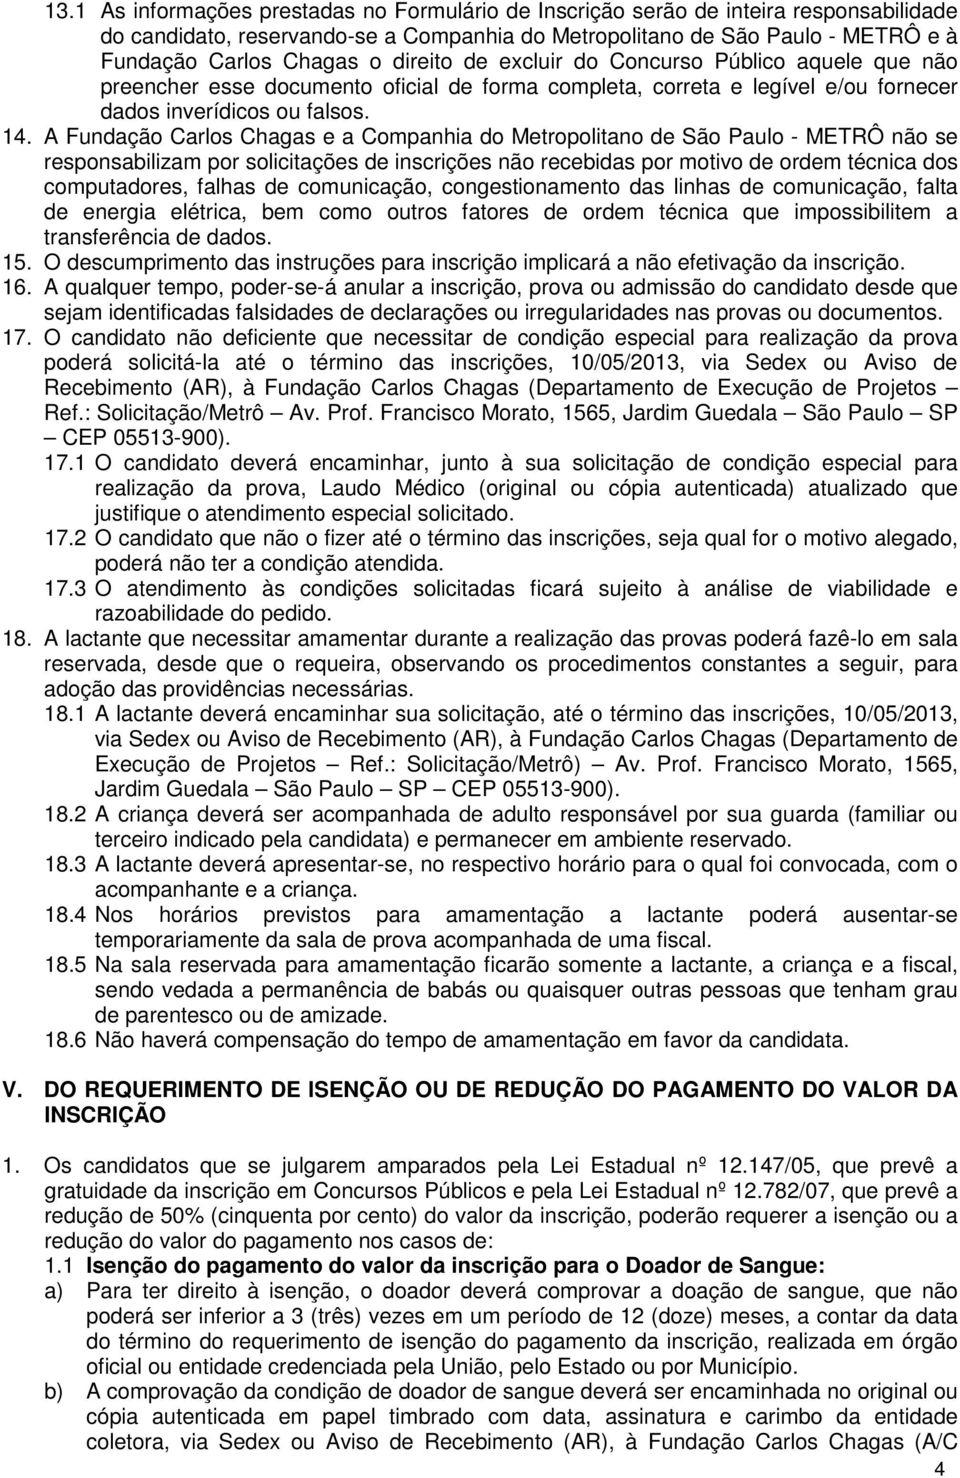 A Fundação Carlos Chagas e a Companhia do Metropolitano de São Paulo - METRÔ não se responsabilizam por solicitações de inscrições não recebidas por motivo de ordem técnica dos computadores, falhas